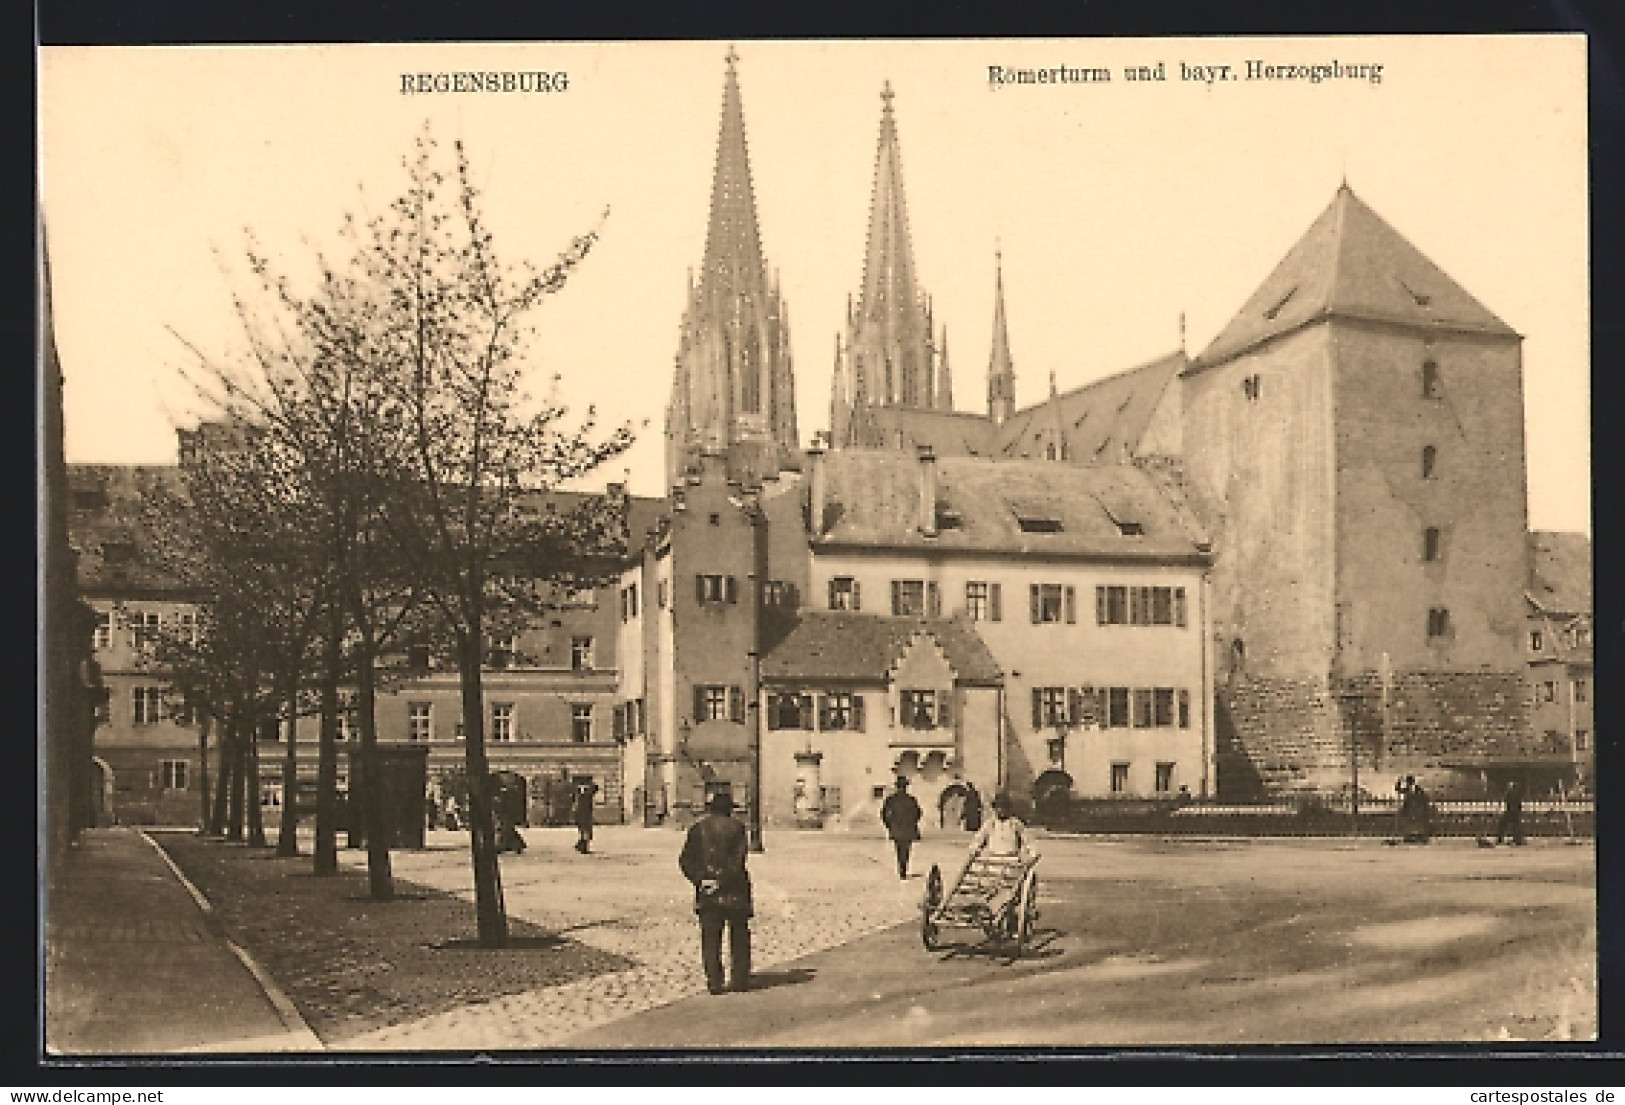 AK Regensburg, Römerturm Und Bayr. Herzogsburg  - Regensburg